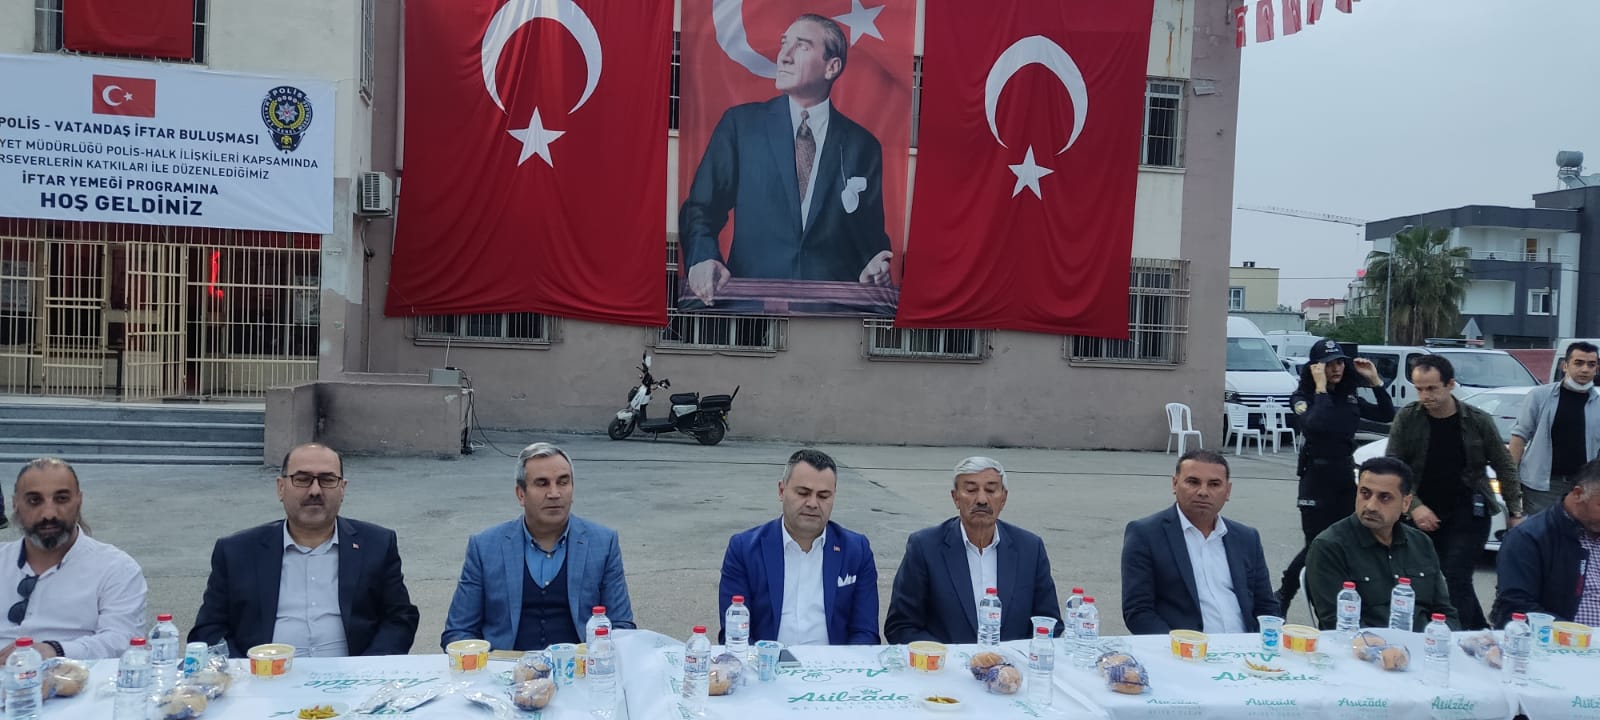 Tarsus Emniyet müdürlüğü vatandaşı ile iftar açtı.